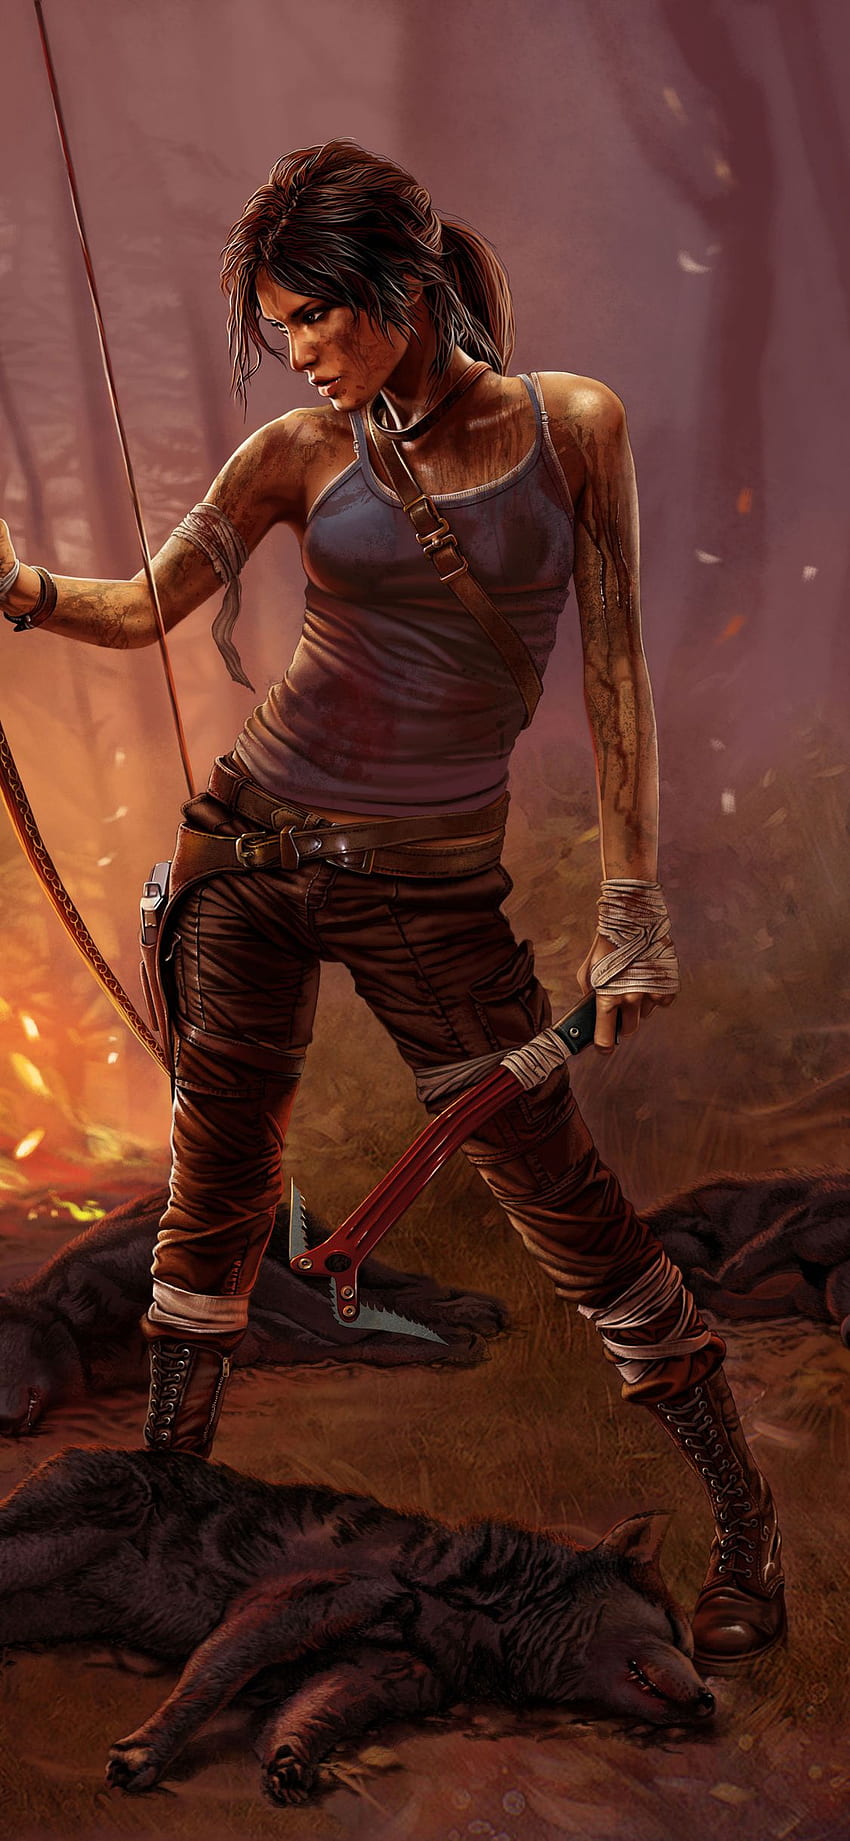 Lara Croft Tomb Raider iPhone XS, iPhone 10 fondo de pantalla del teléfono